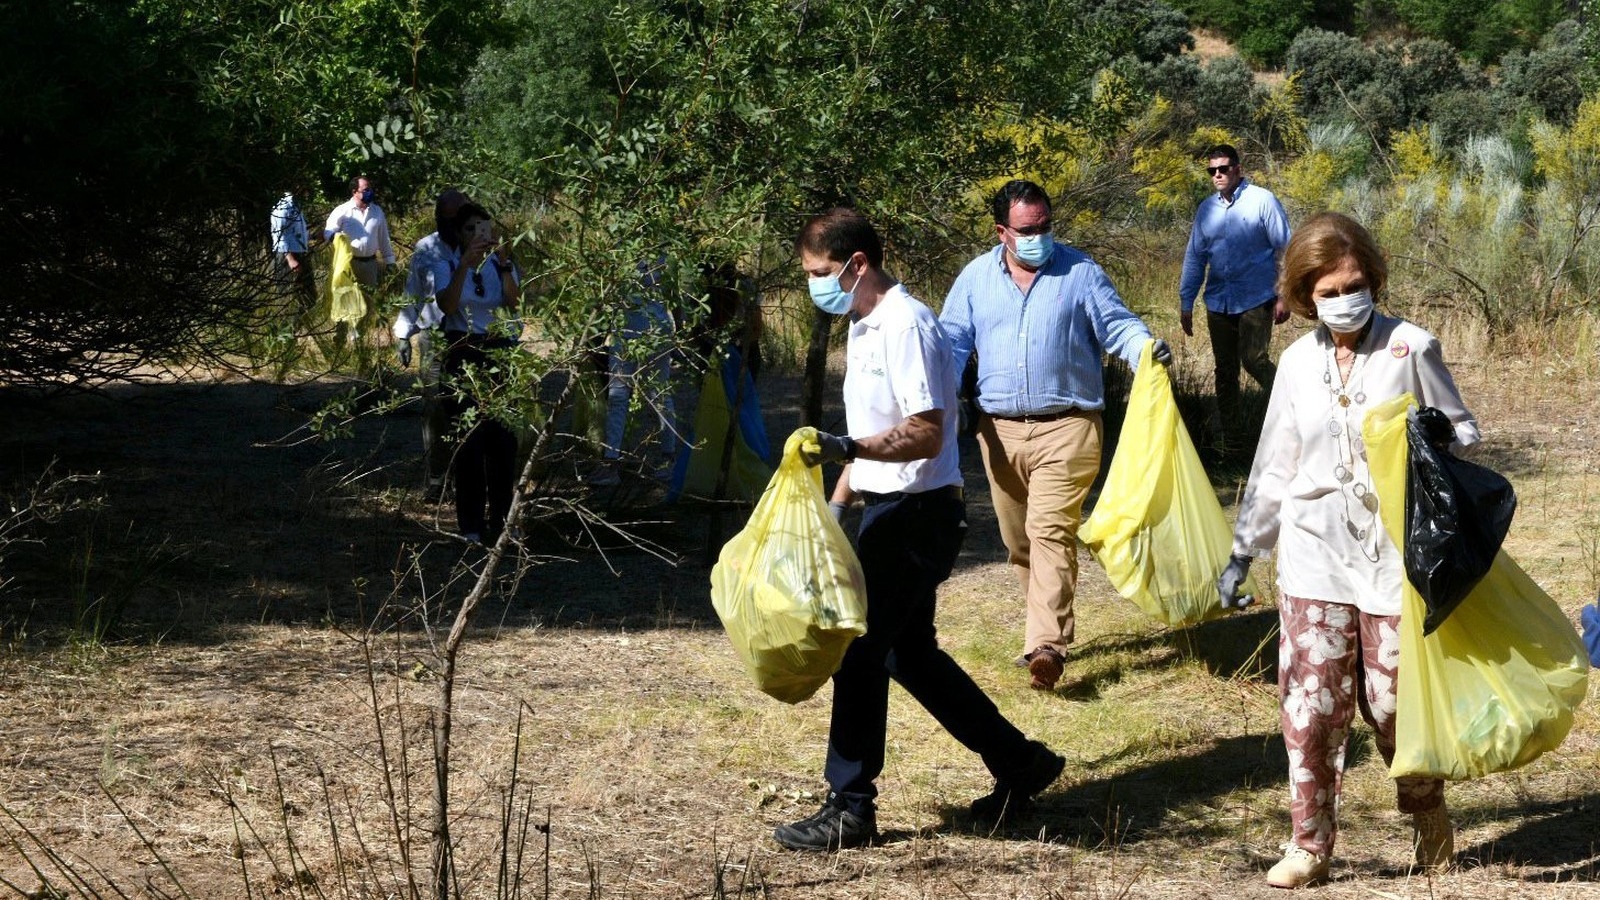 La reina Doña Sofía recoge basura en el Monte de Boadilla  junto al alcalde y voluntarios